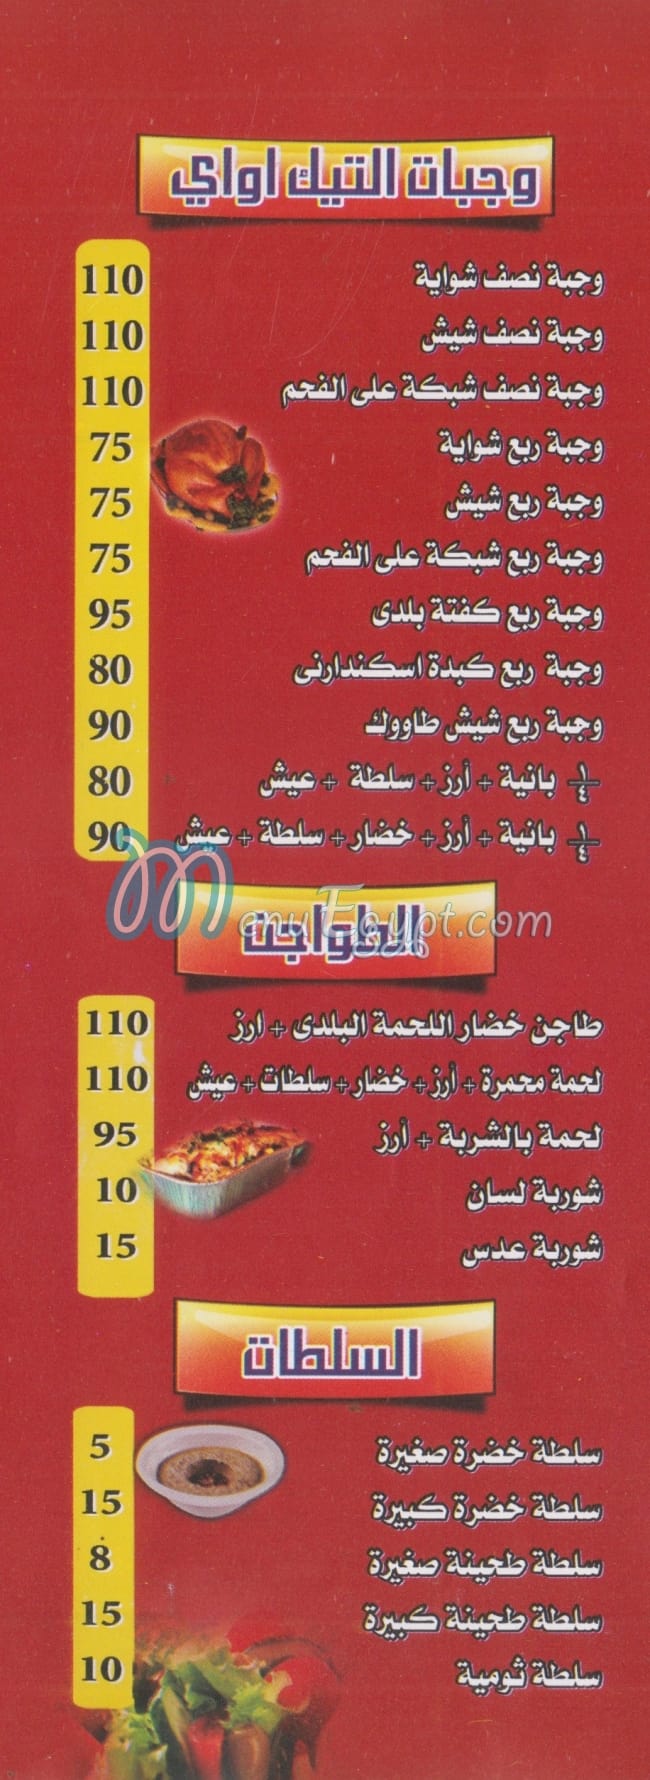 El Fayoumi Grill menu Egypt